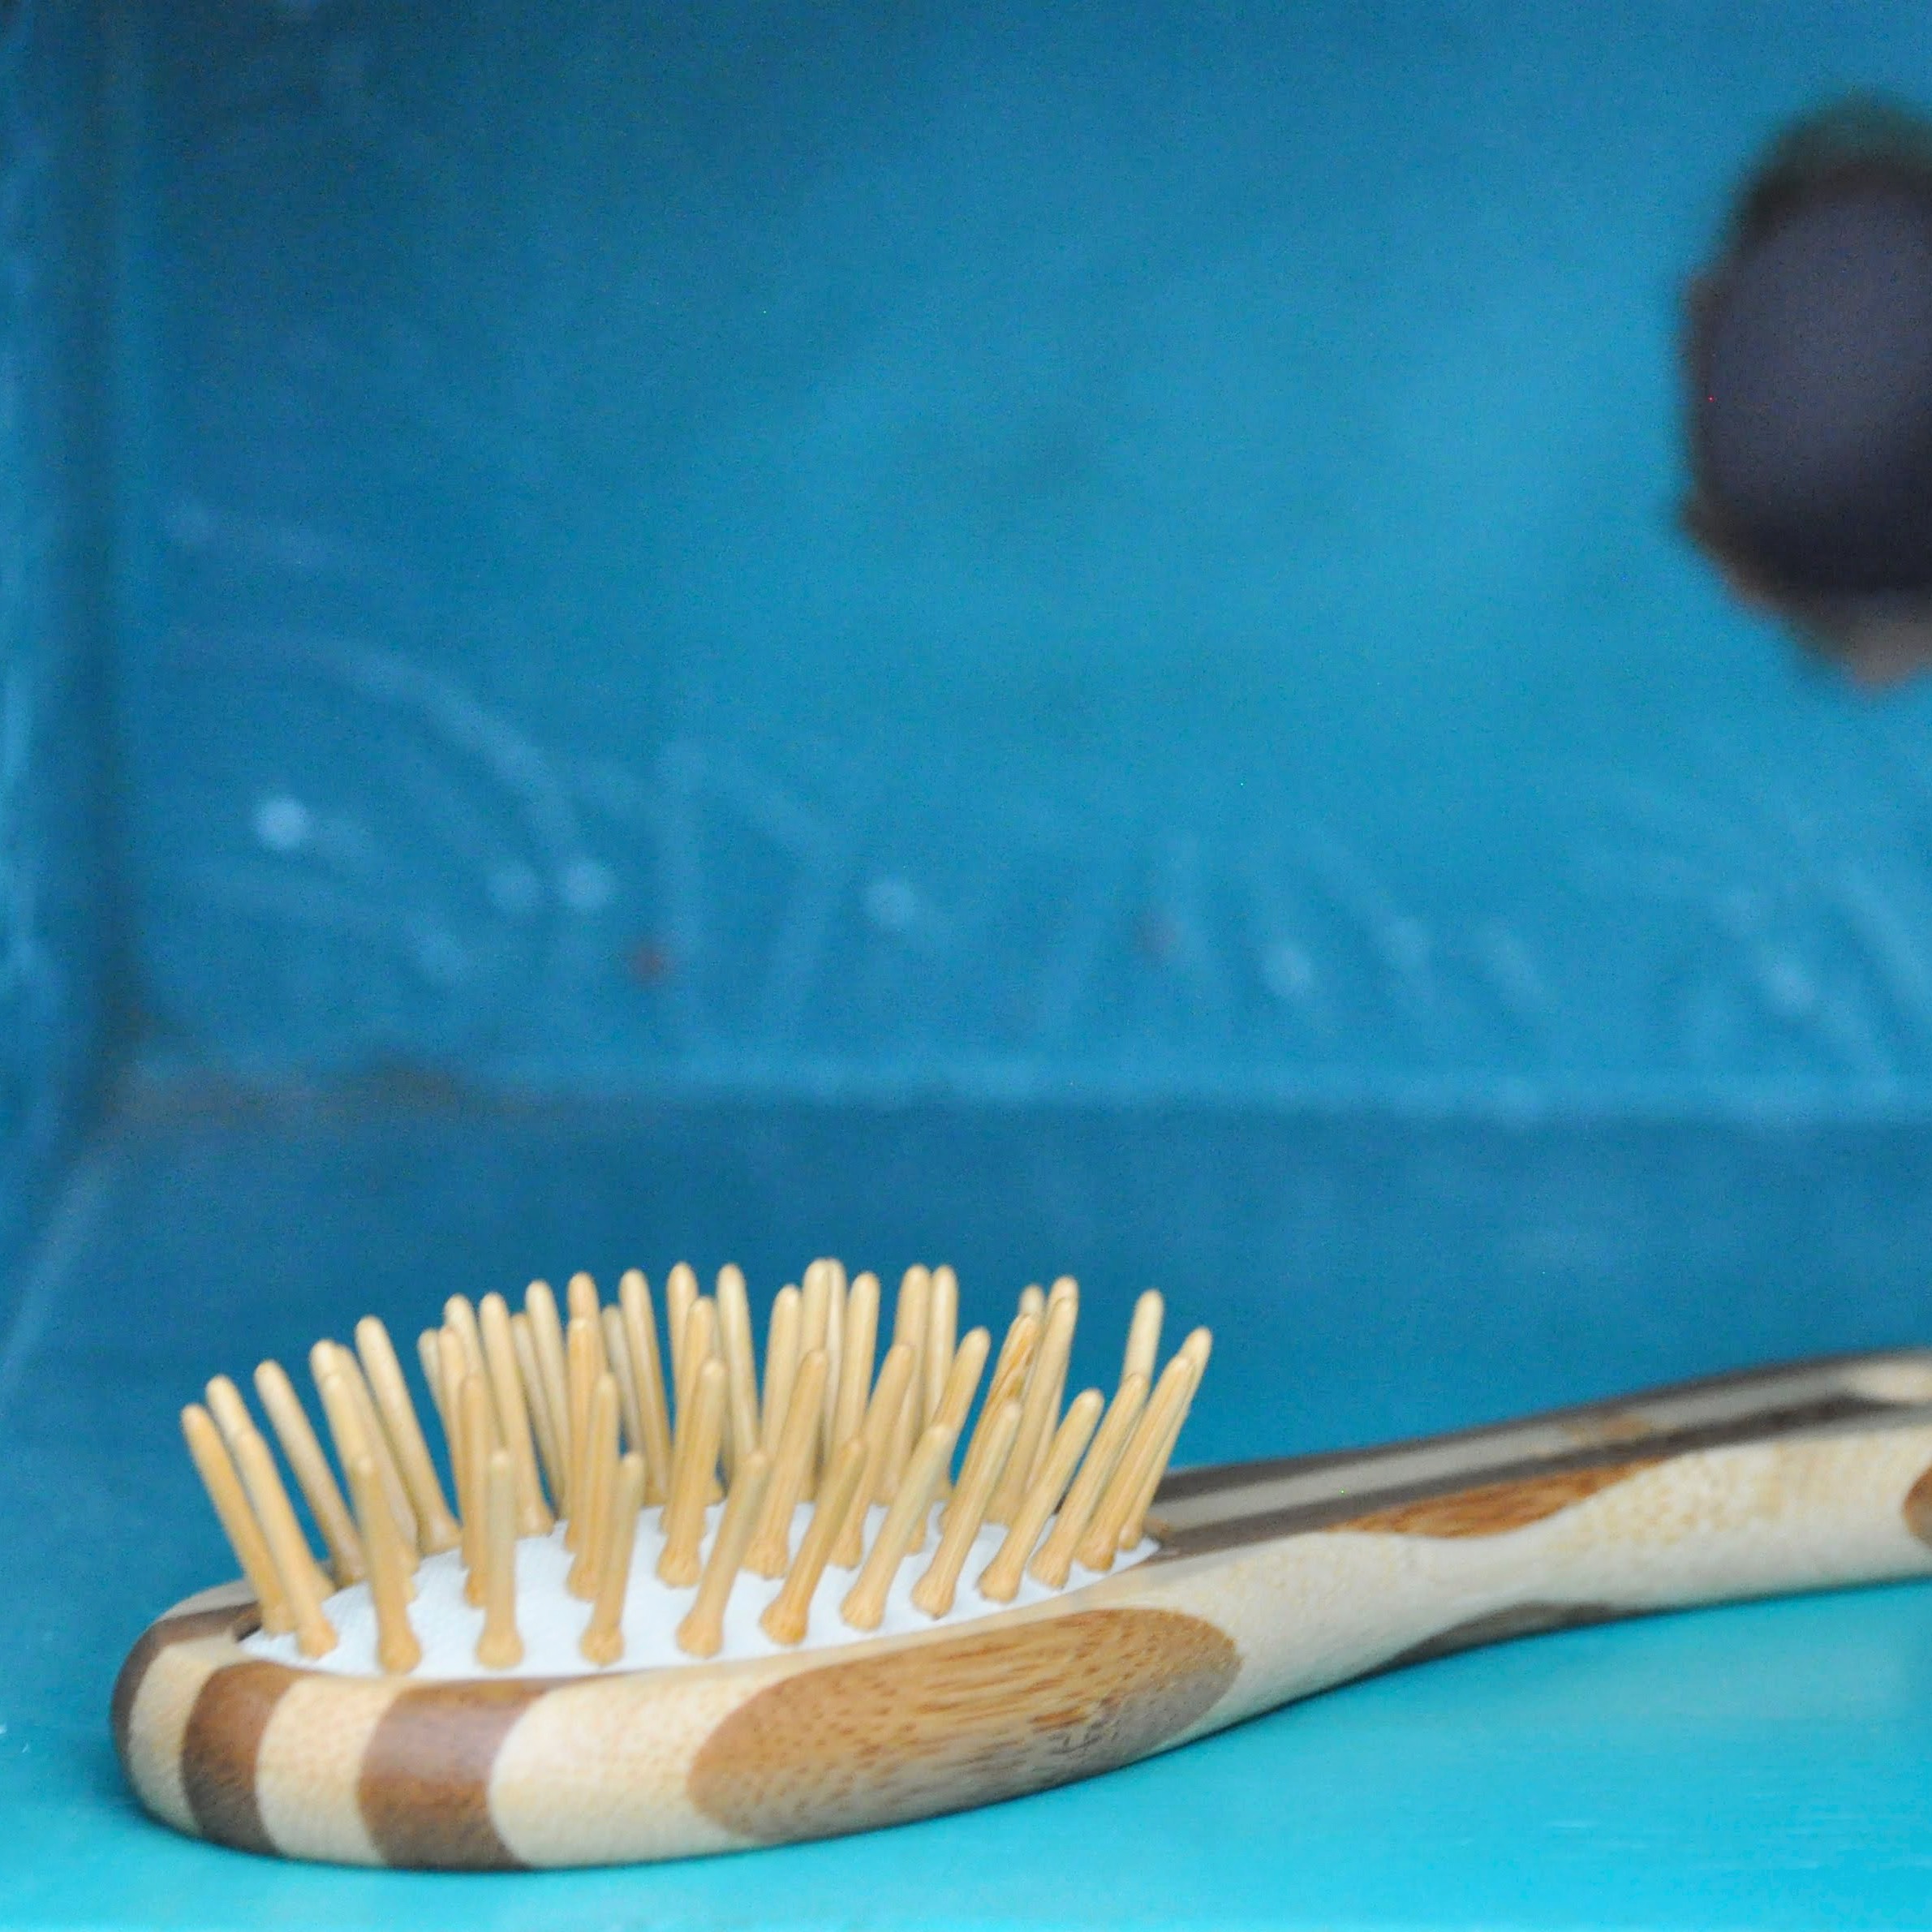 4. MiEco Bamboo Hairbrush